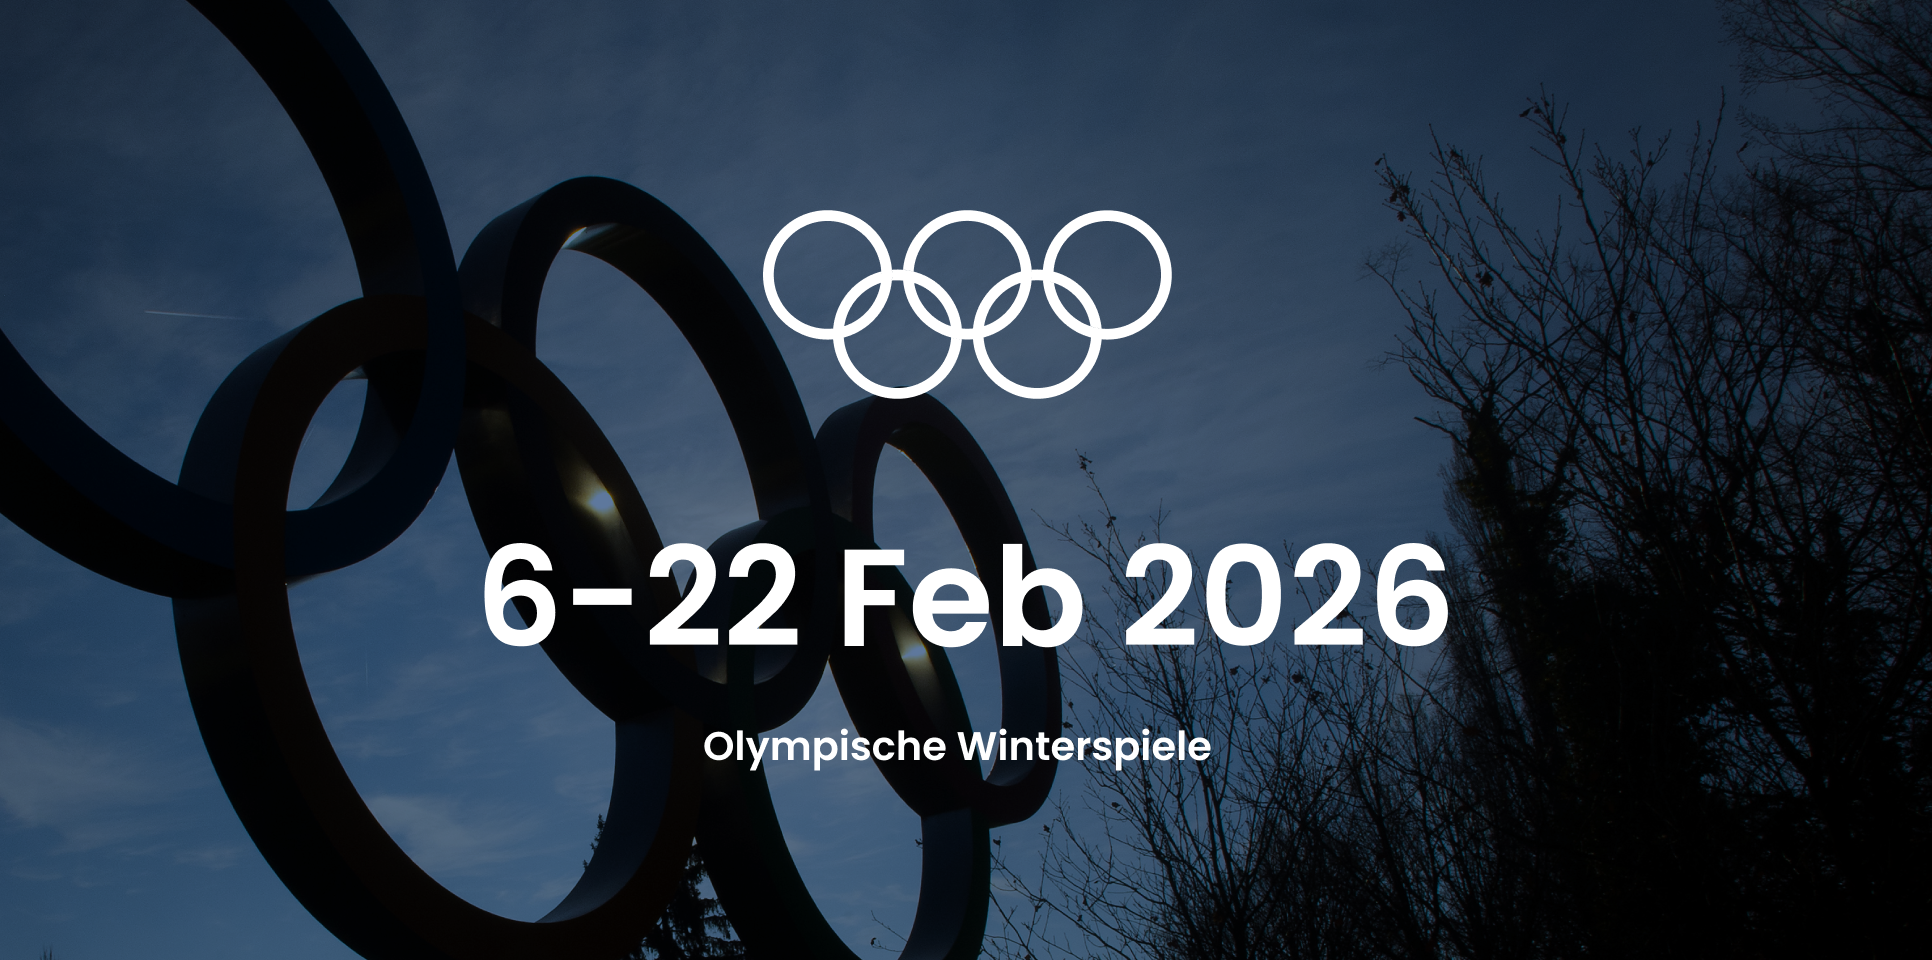 Bild mit den Daten für den Beginn und das Ende der Olympischen Winterspiele: 6-22 Februar 2026